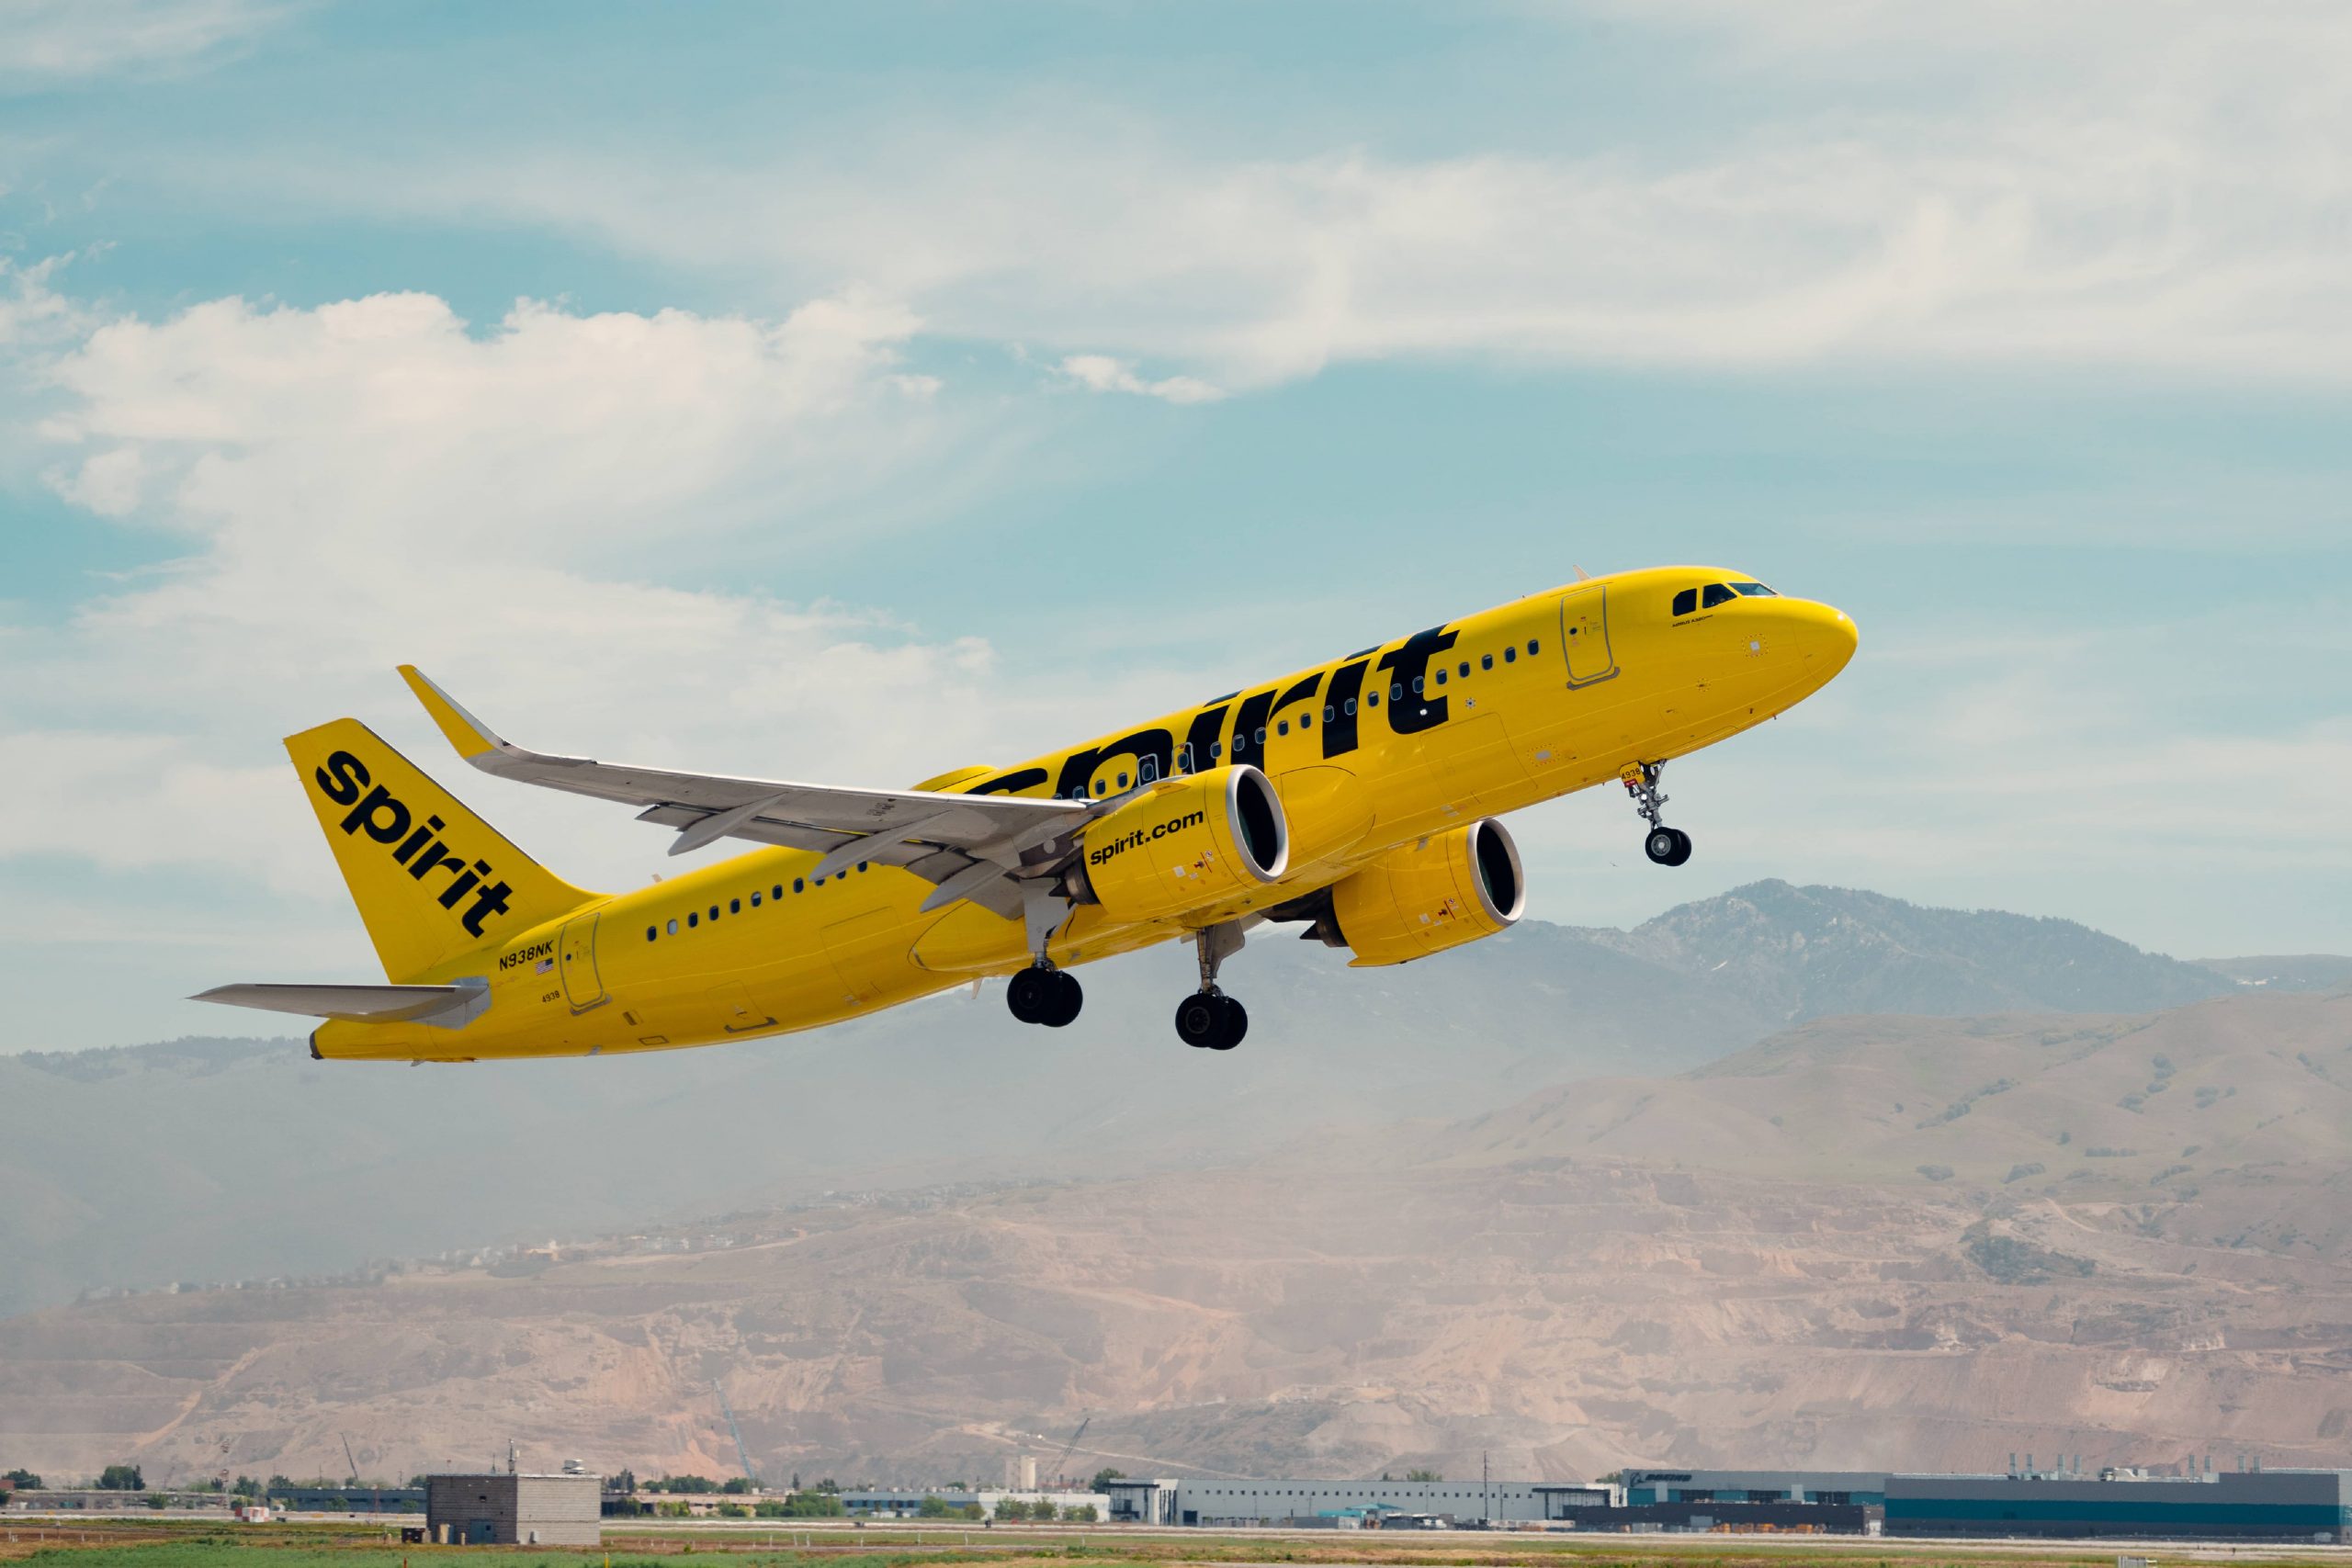 Spirit airlines quita de la venta ruta internacional